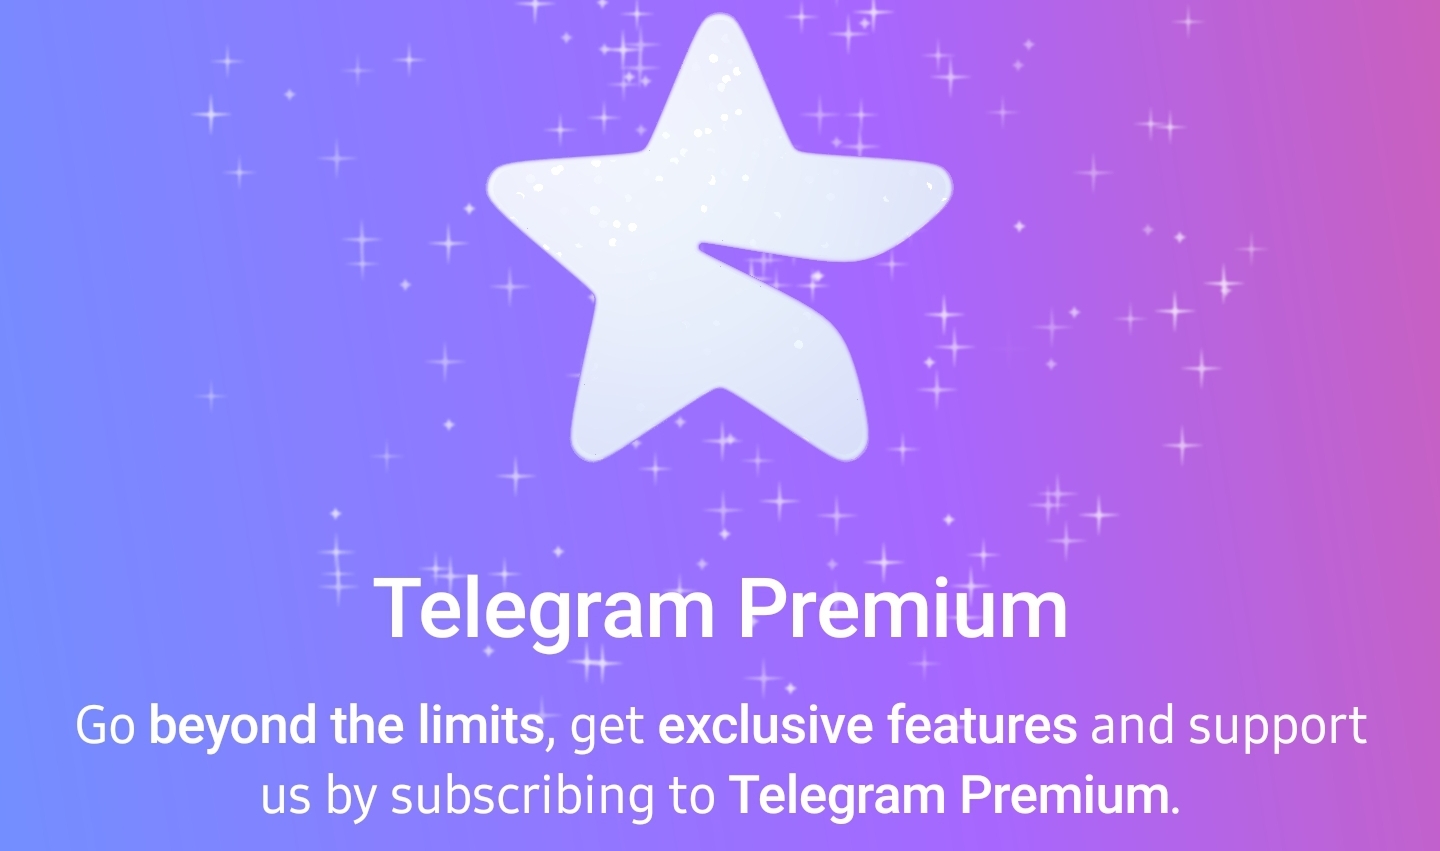 Telegram Premium kini ditawarkan pada harga RM 22.90 sebulan - ini kelebihan akaun premium 7